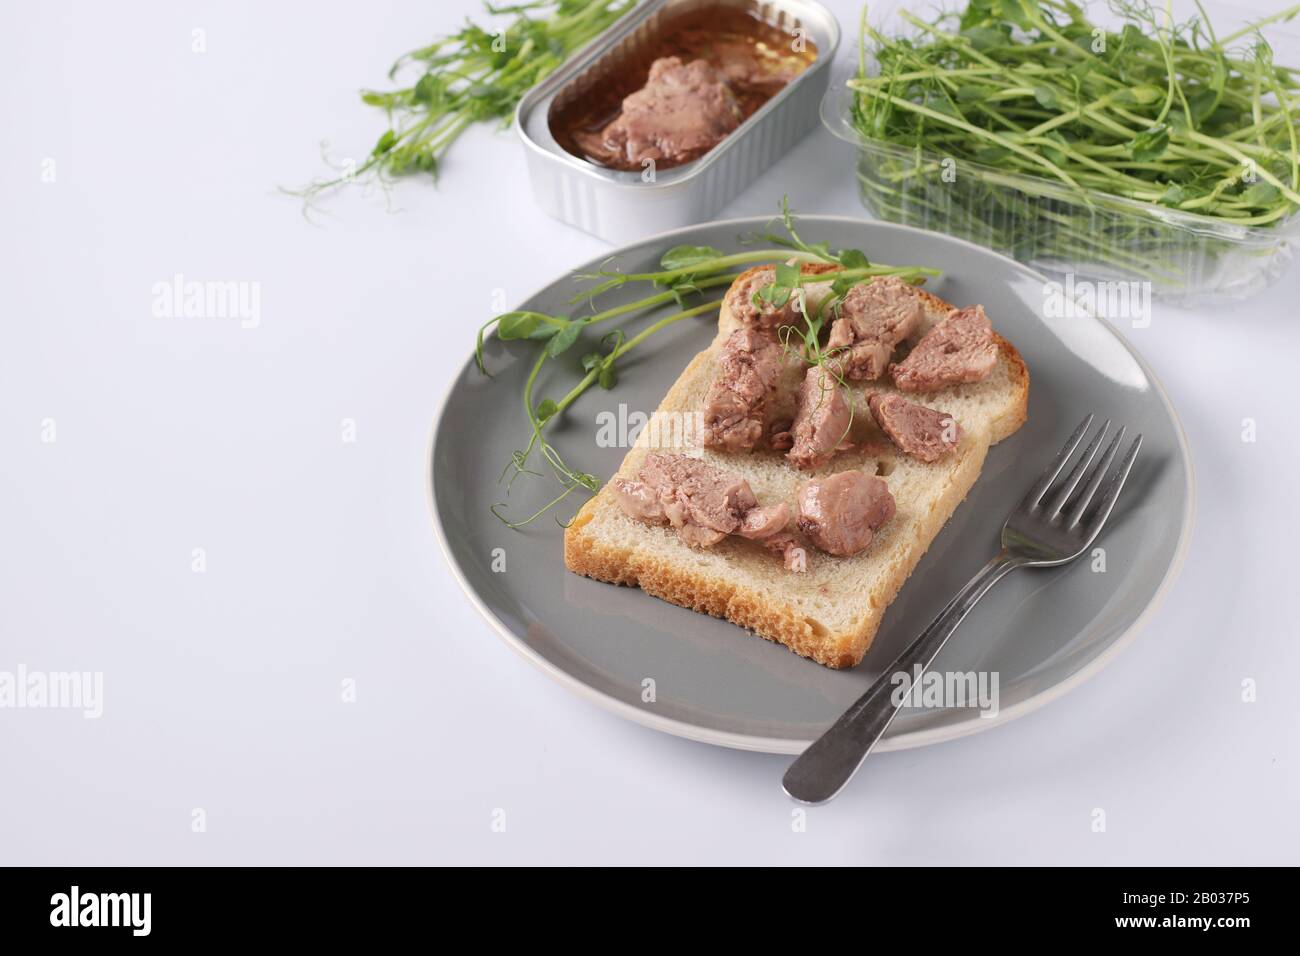 Gesunde Nahrung, Sandwich mit Dorschleber und Erbsen Mikrogrine auf einer  Platte auf weißem Hintergrund Stockfotografie - Alamy